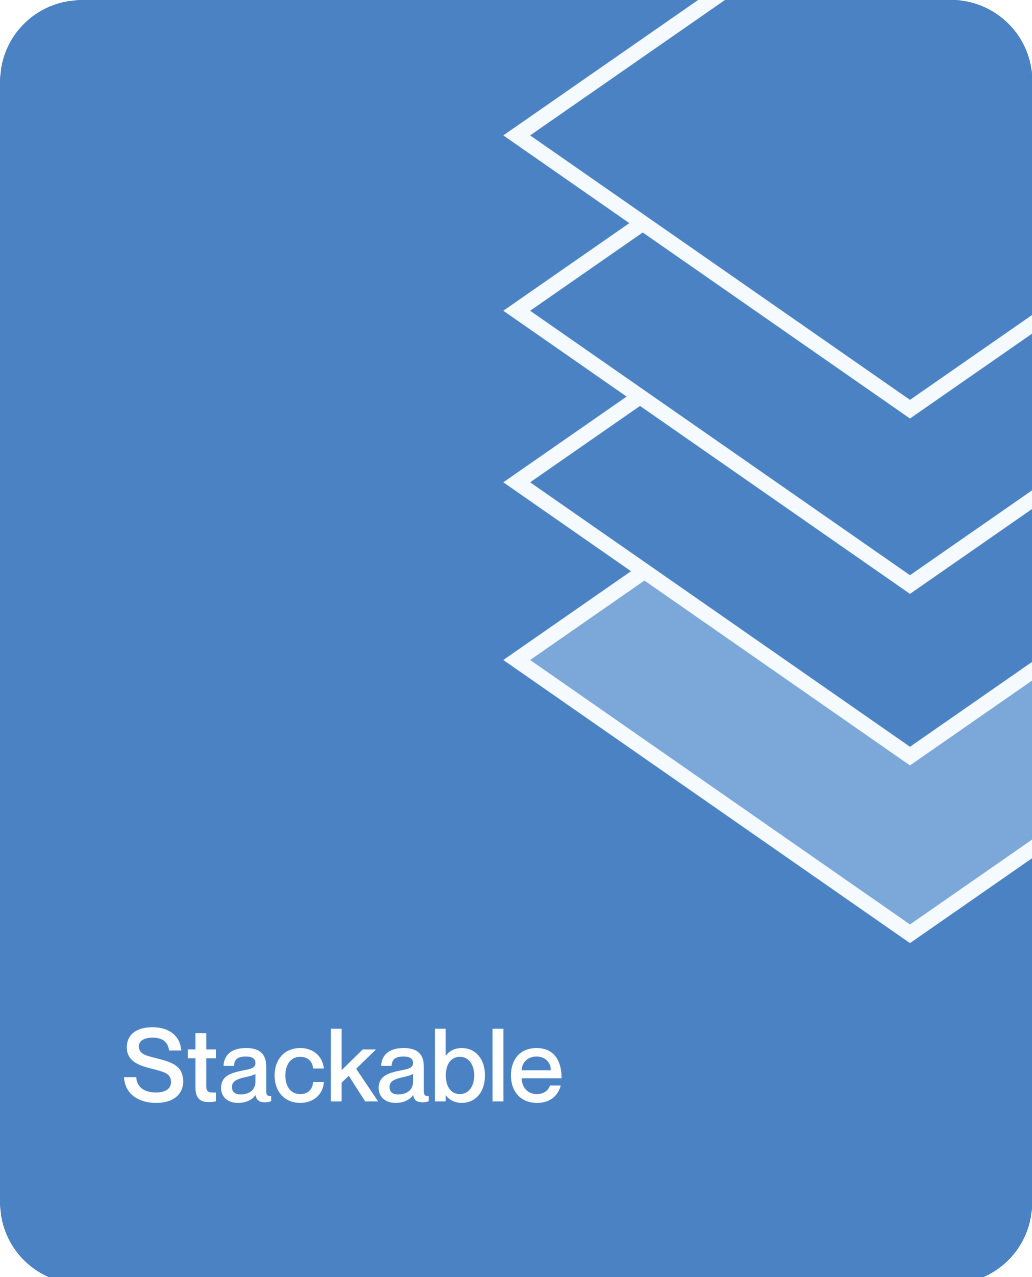 Stackable